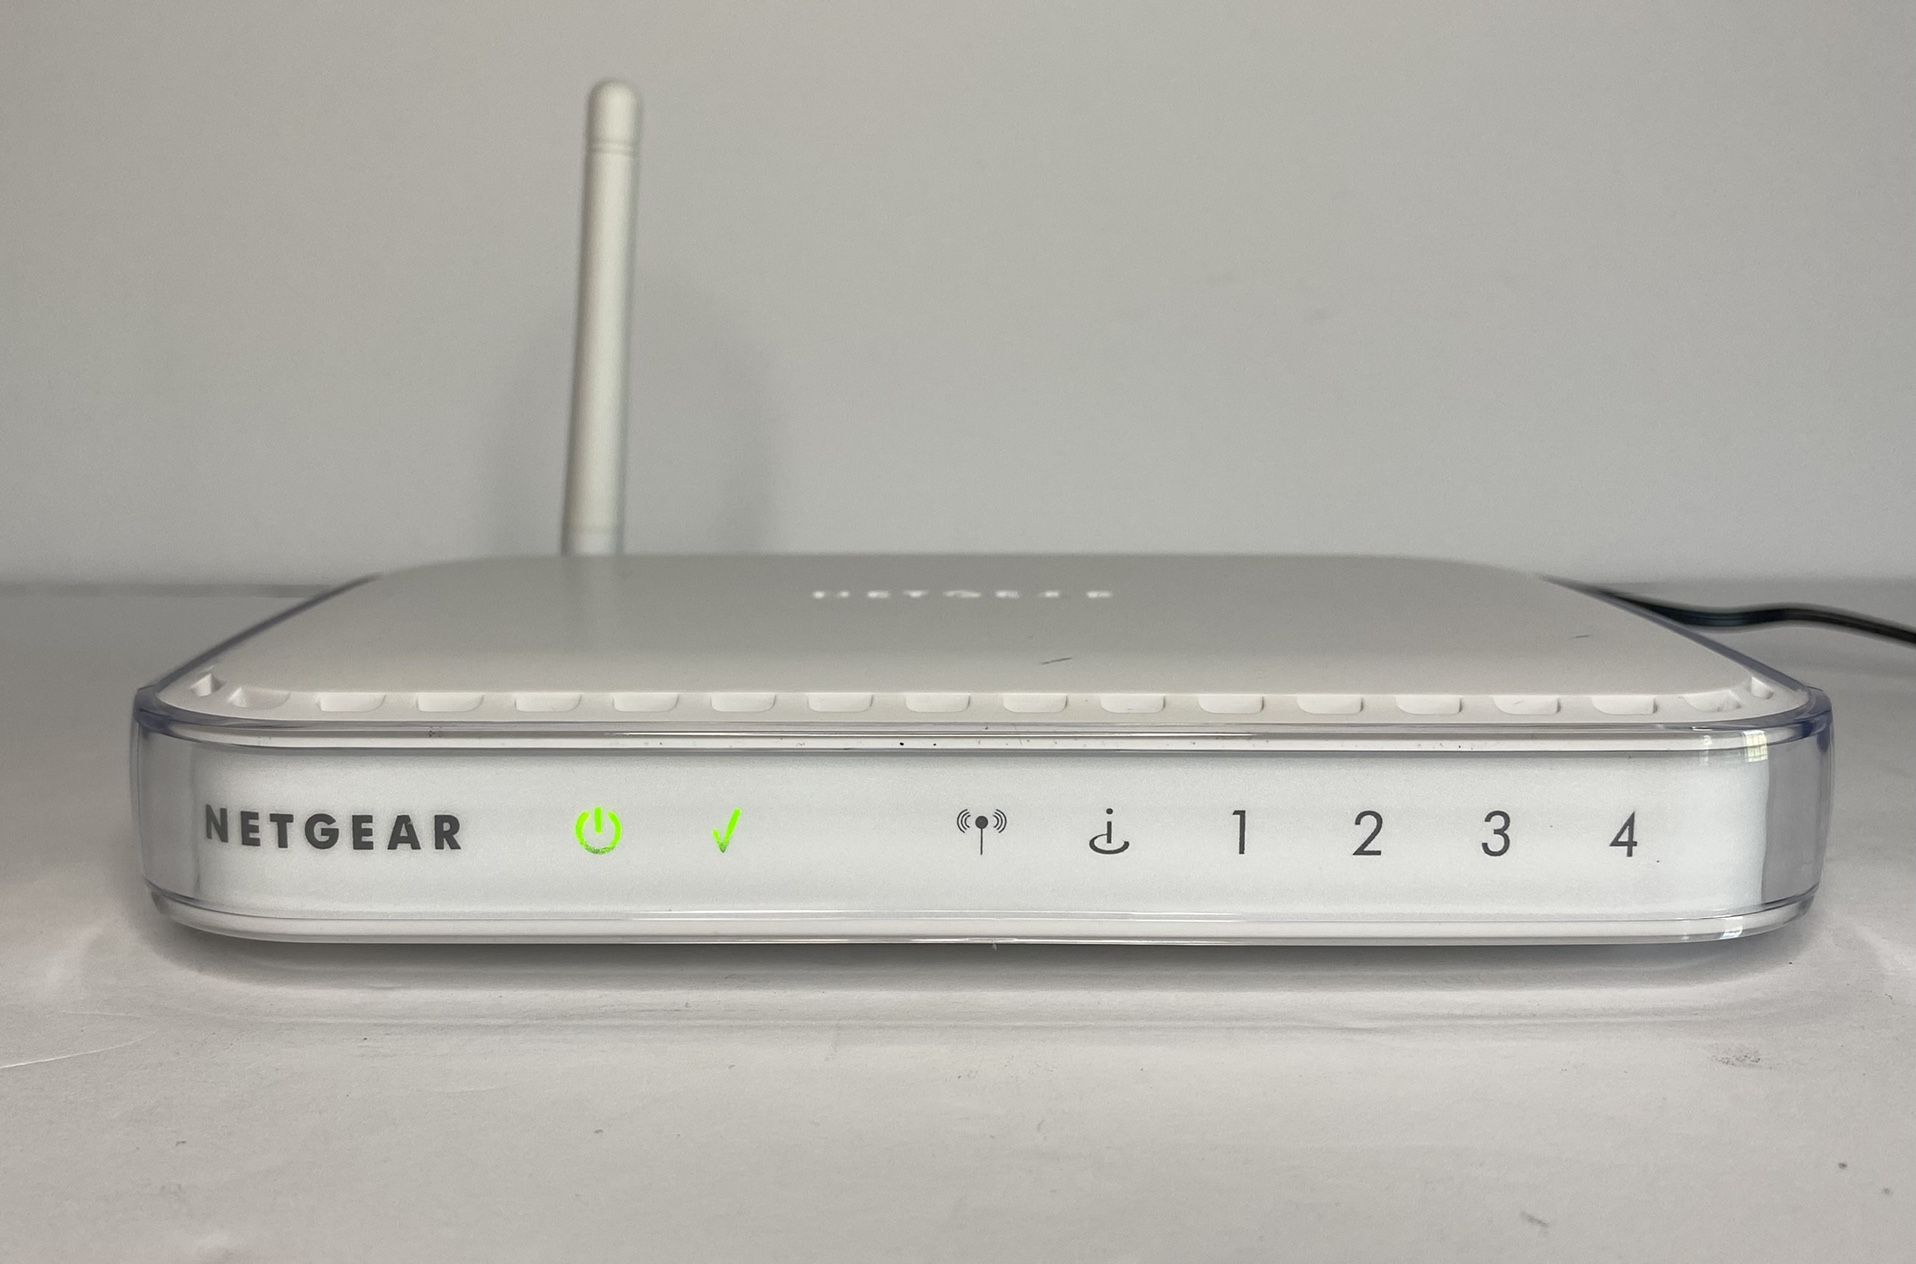 NETGEAR WGR614 V5 54 Mbps 4-Port 10/100 Wireless G Router 